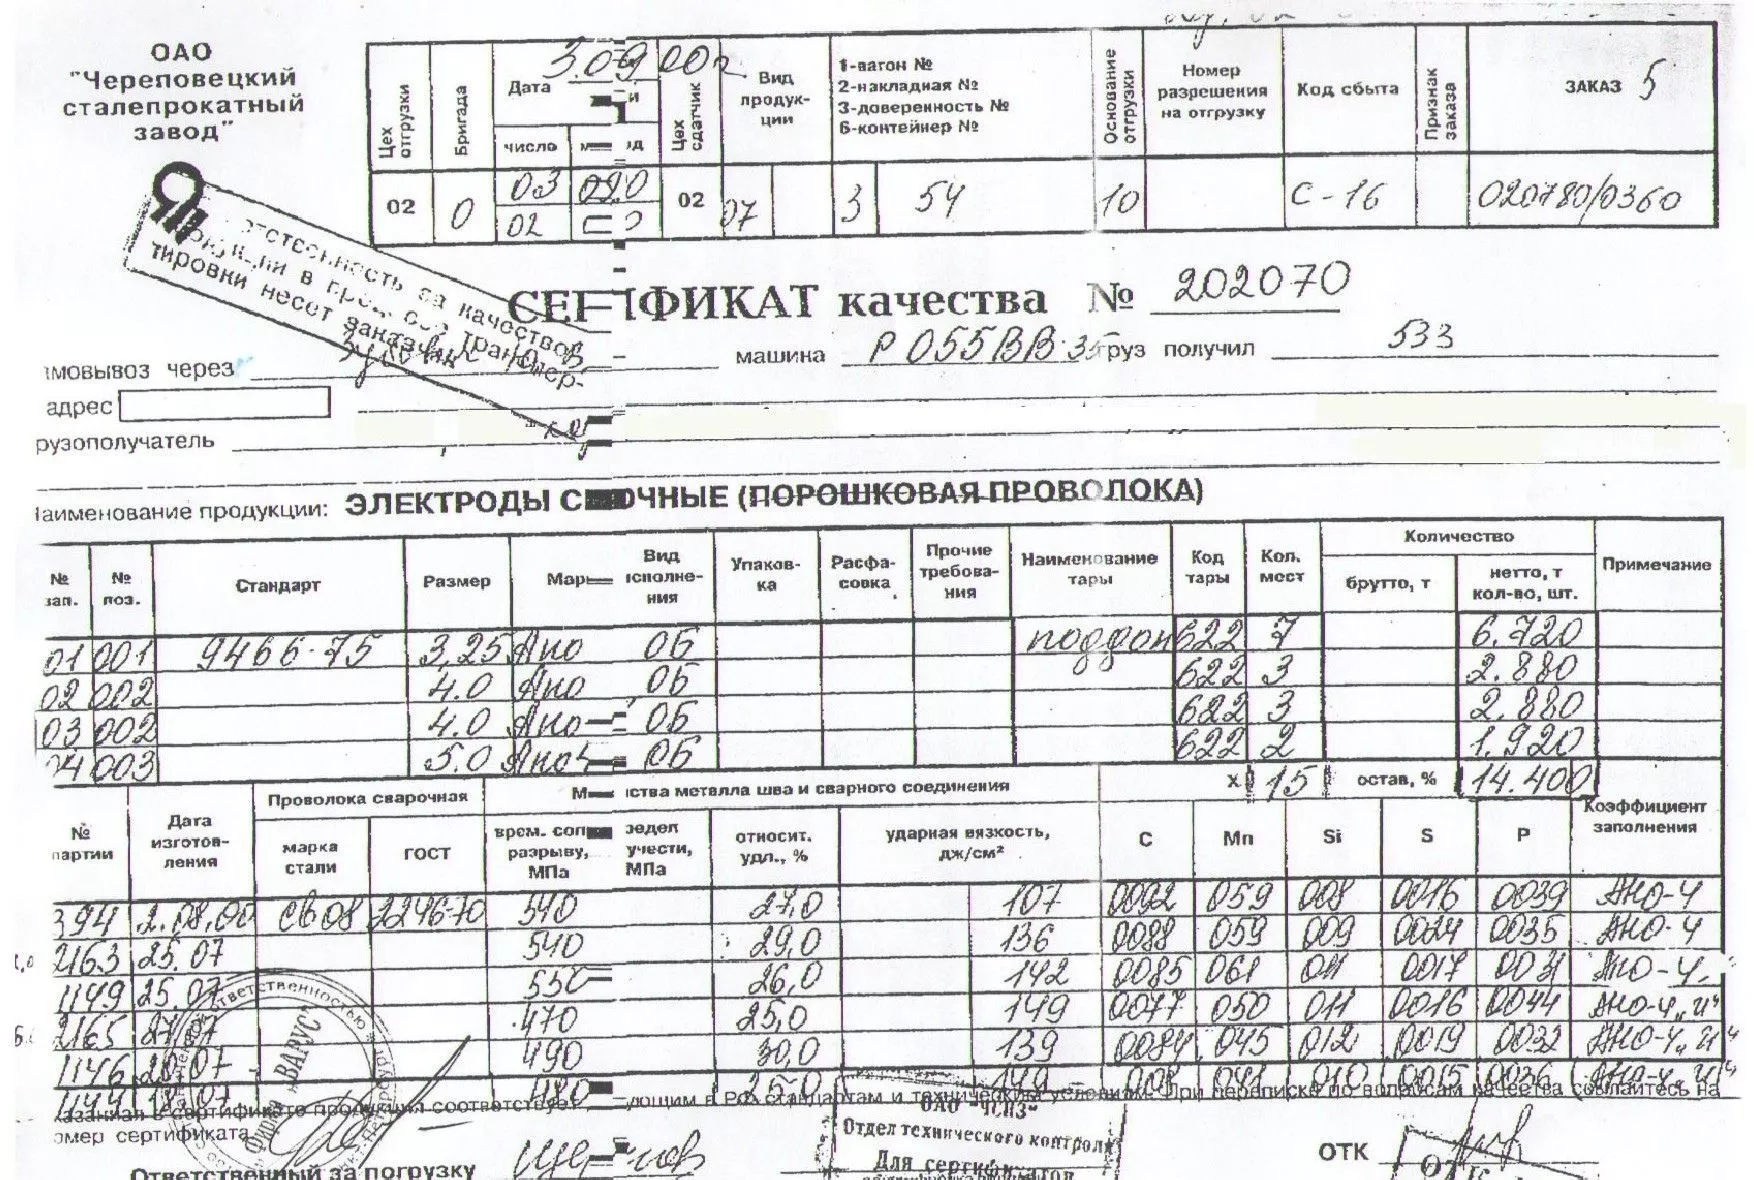 Сертификат качества на опоры скользящие хомутовые от 11.08 (1)